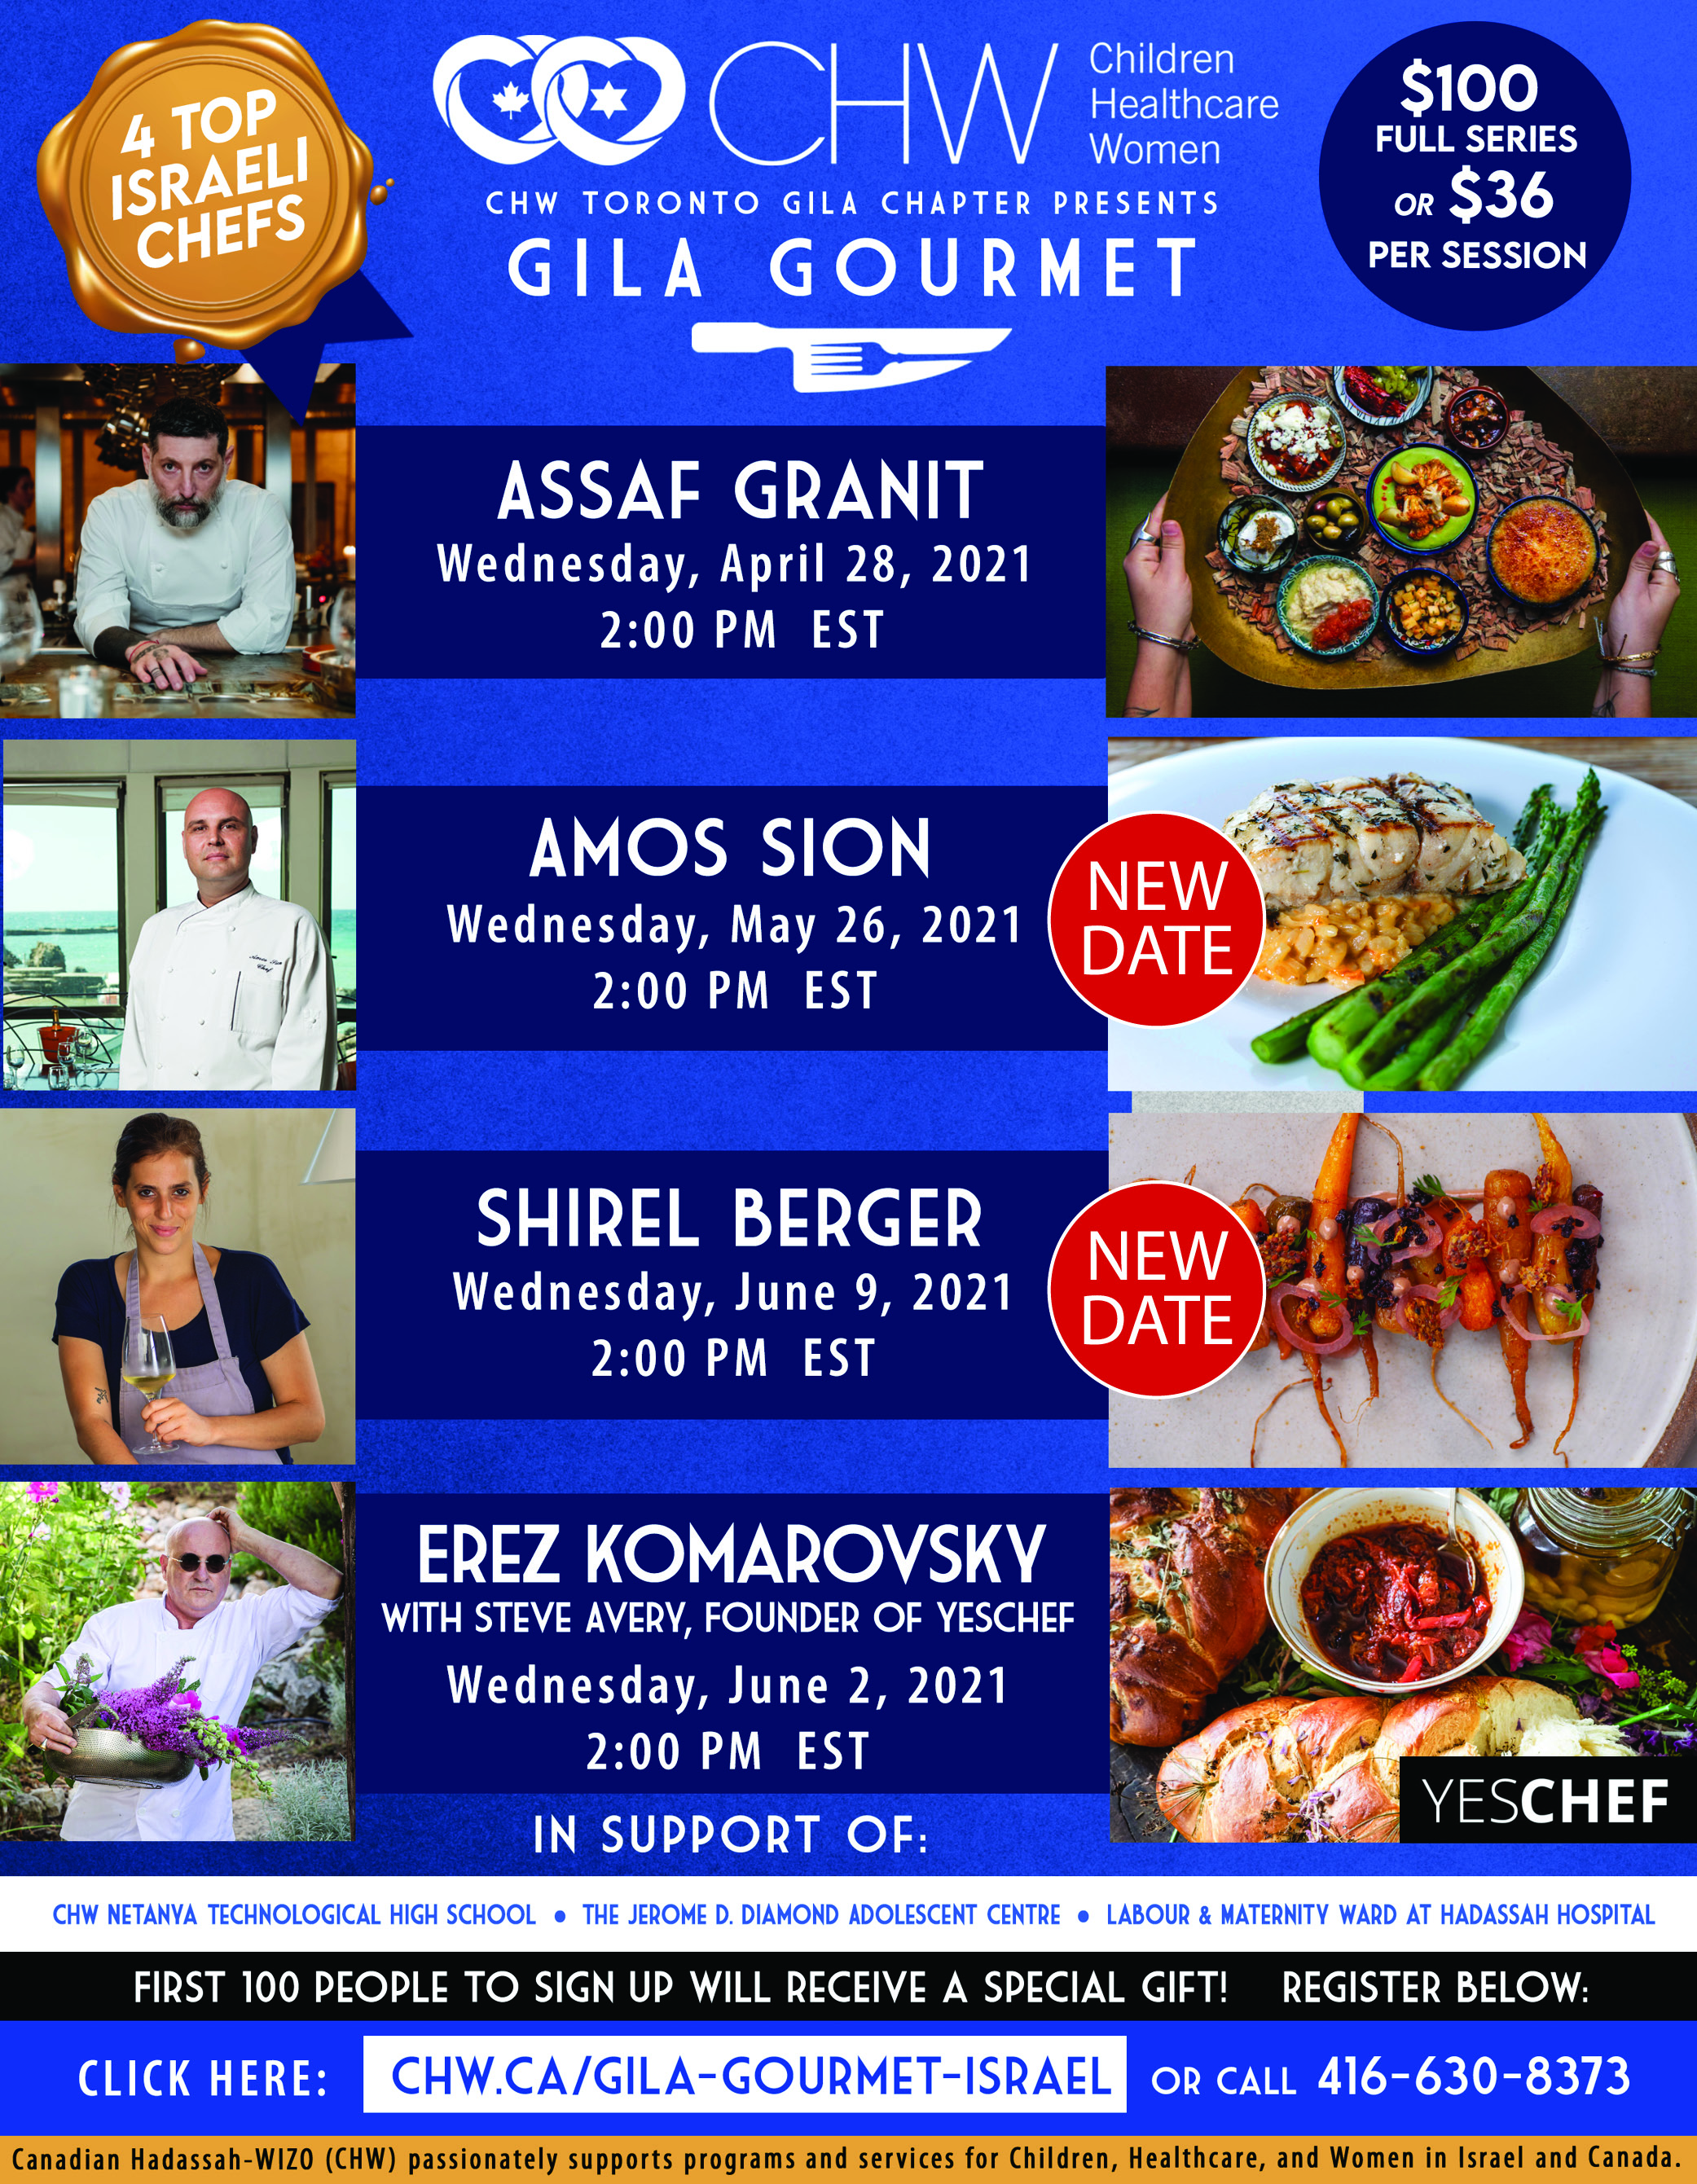 Gila Gourmet - Israel Chefs Flyer 2021 (Mar9).jpg